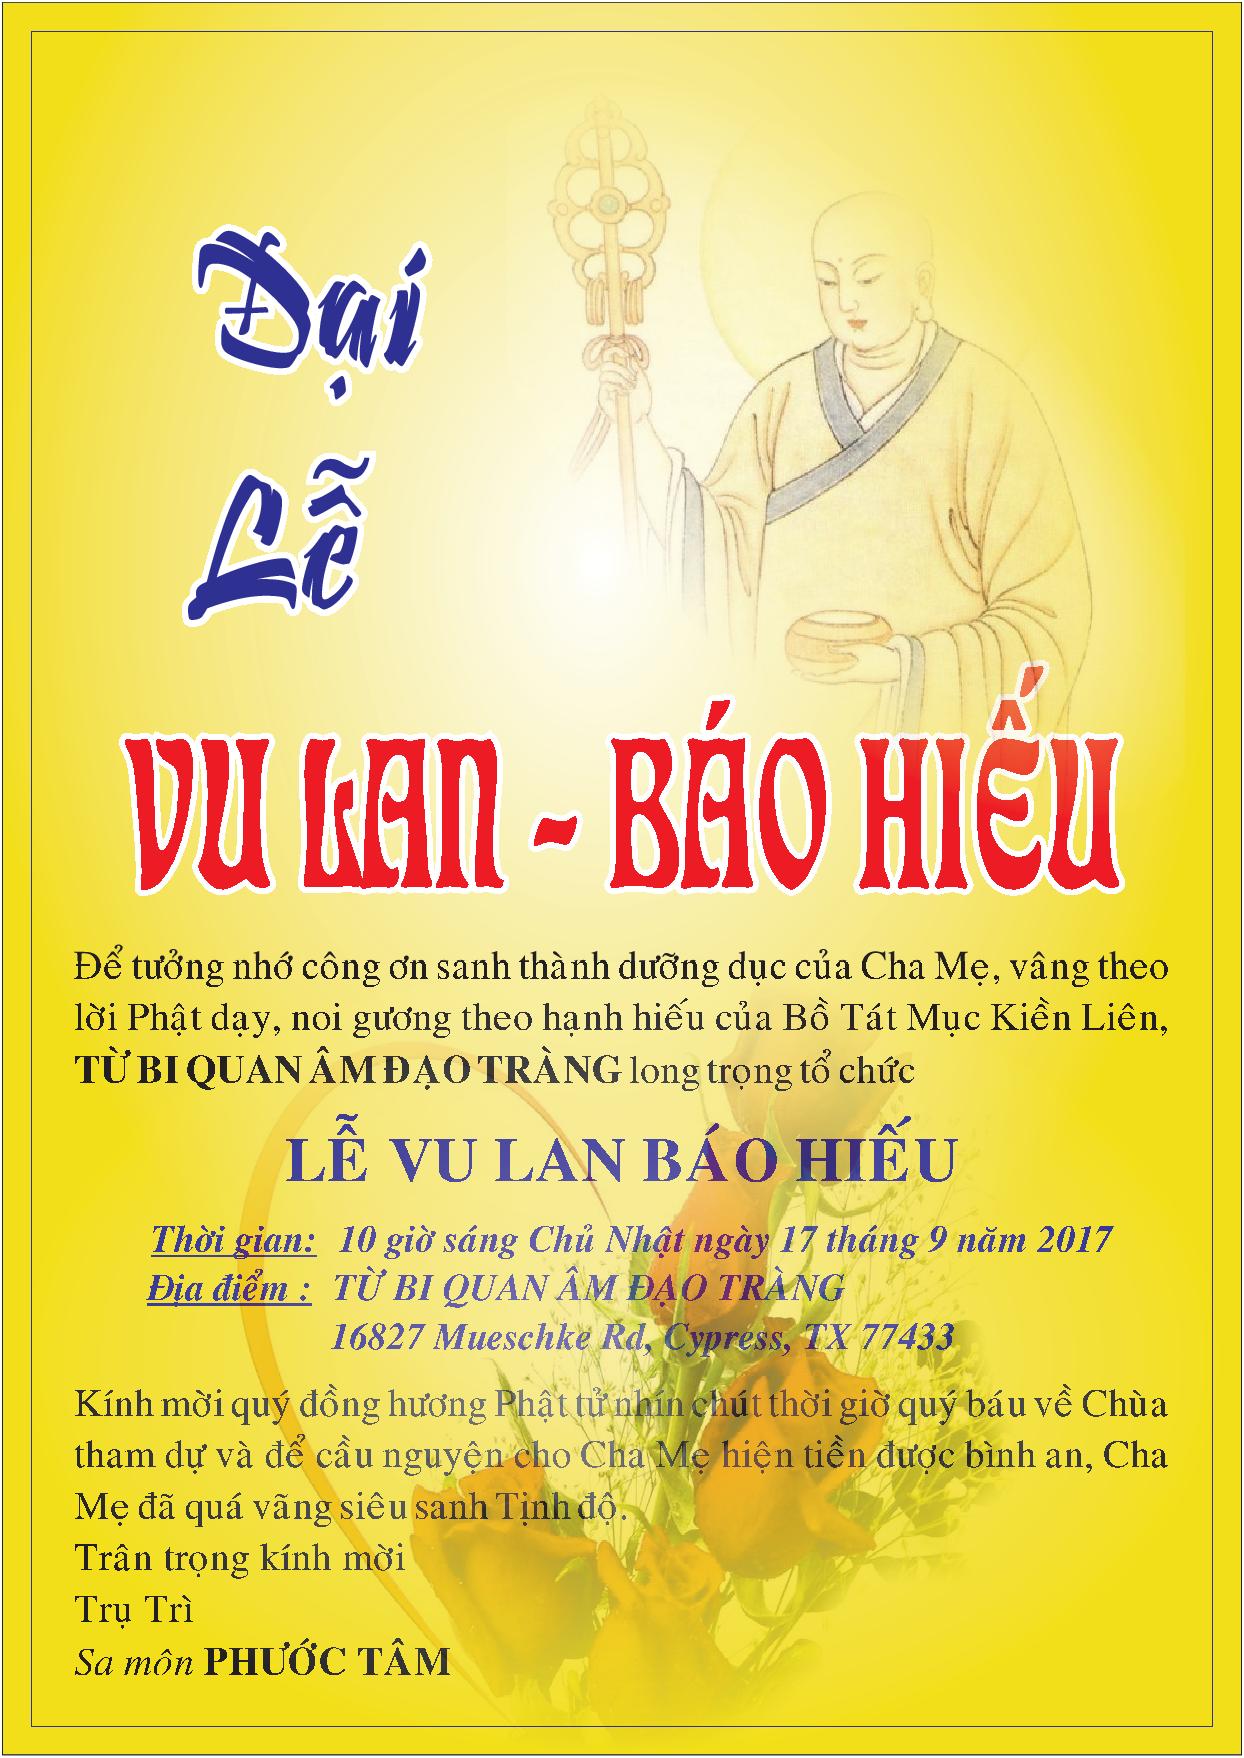 Vu Lan là ngày lễ truyền thống của người Việt Nam dành để tưởng nhớ công ơn cha mẹ. Năm 2024, các chùa đều tổ chức các hoạt động gắn kết gia đình và giúp đỡ những người già yếu. Hãy cùng xem bức ảnh để nhận thức thêm về ý nghĩa của Vu Lan và cảm nhận tình cảm gia đình.